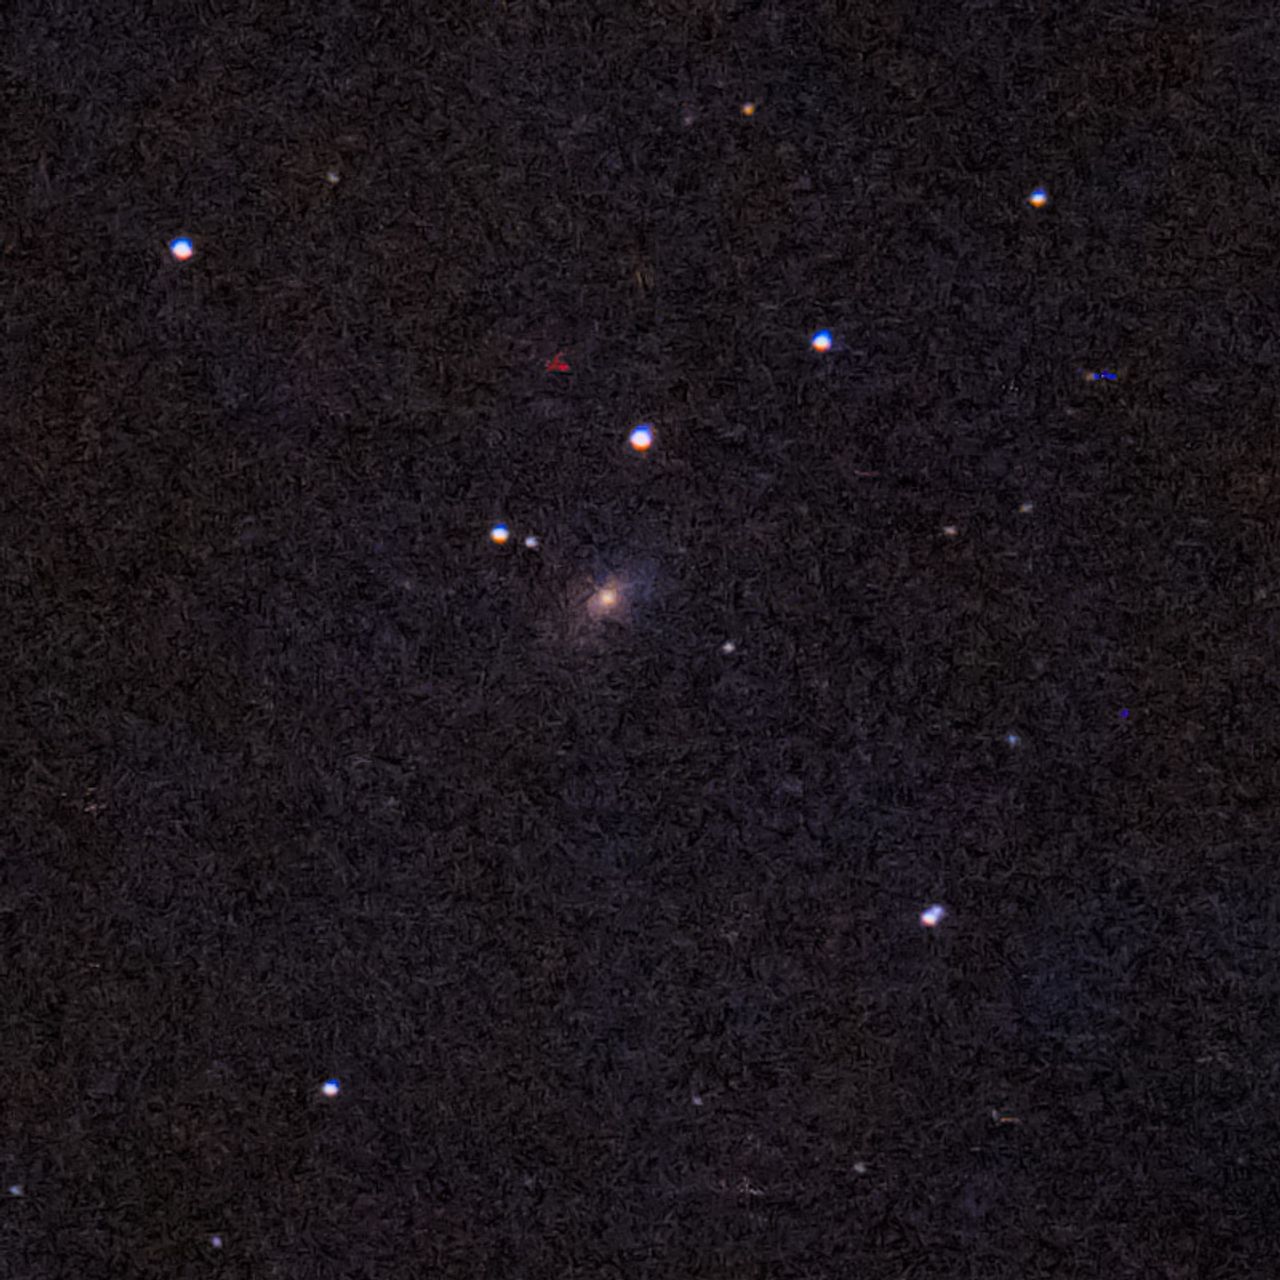 NGC1425